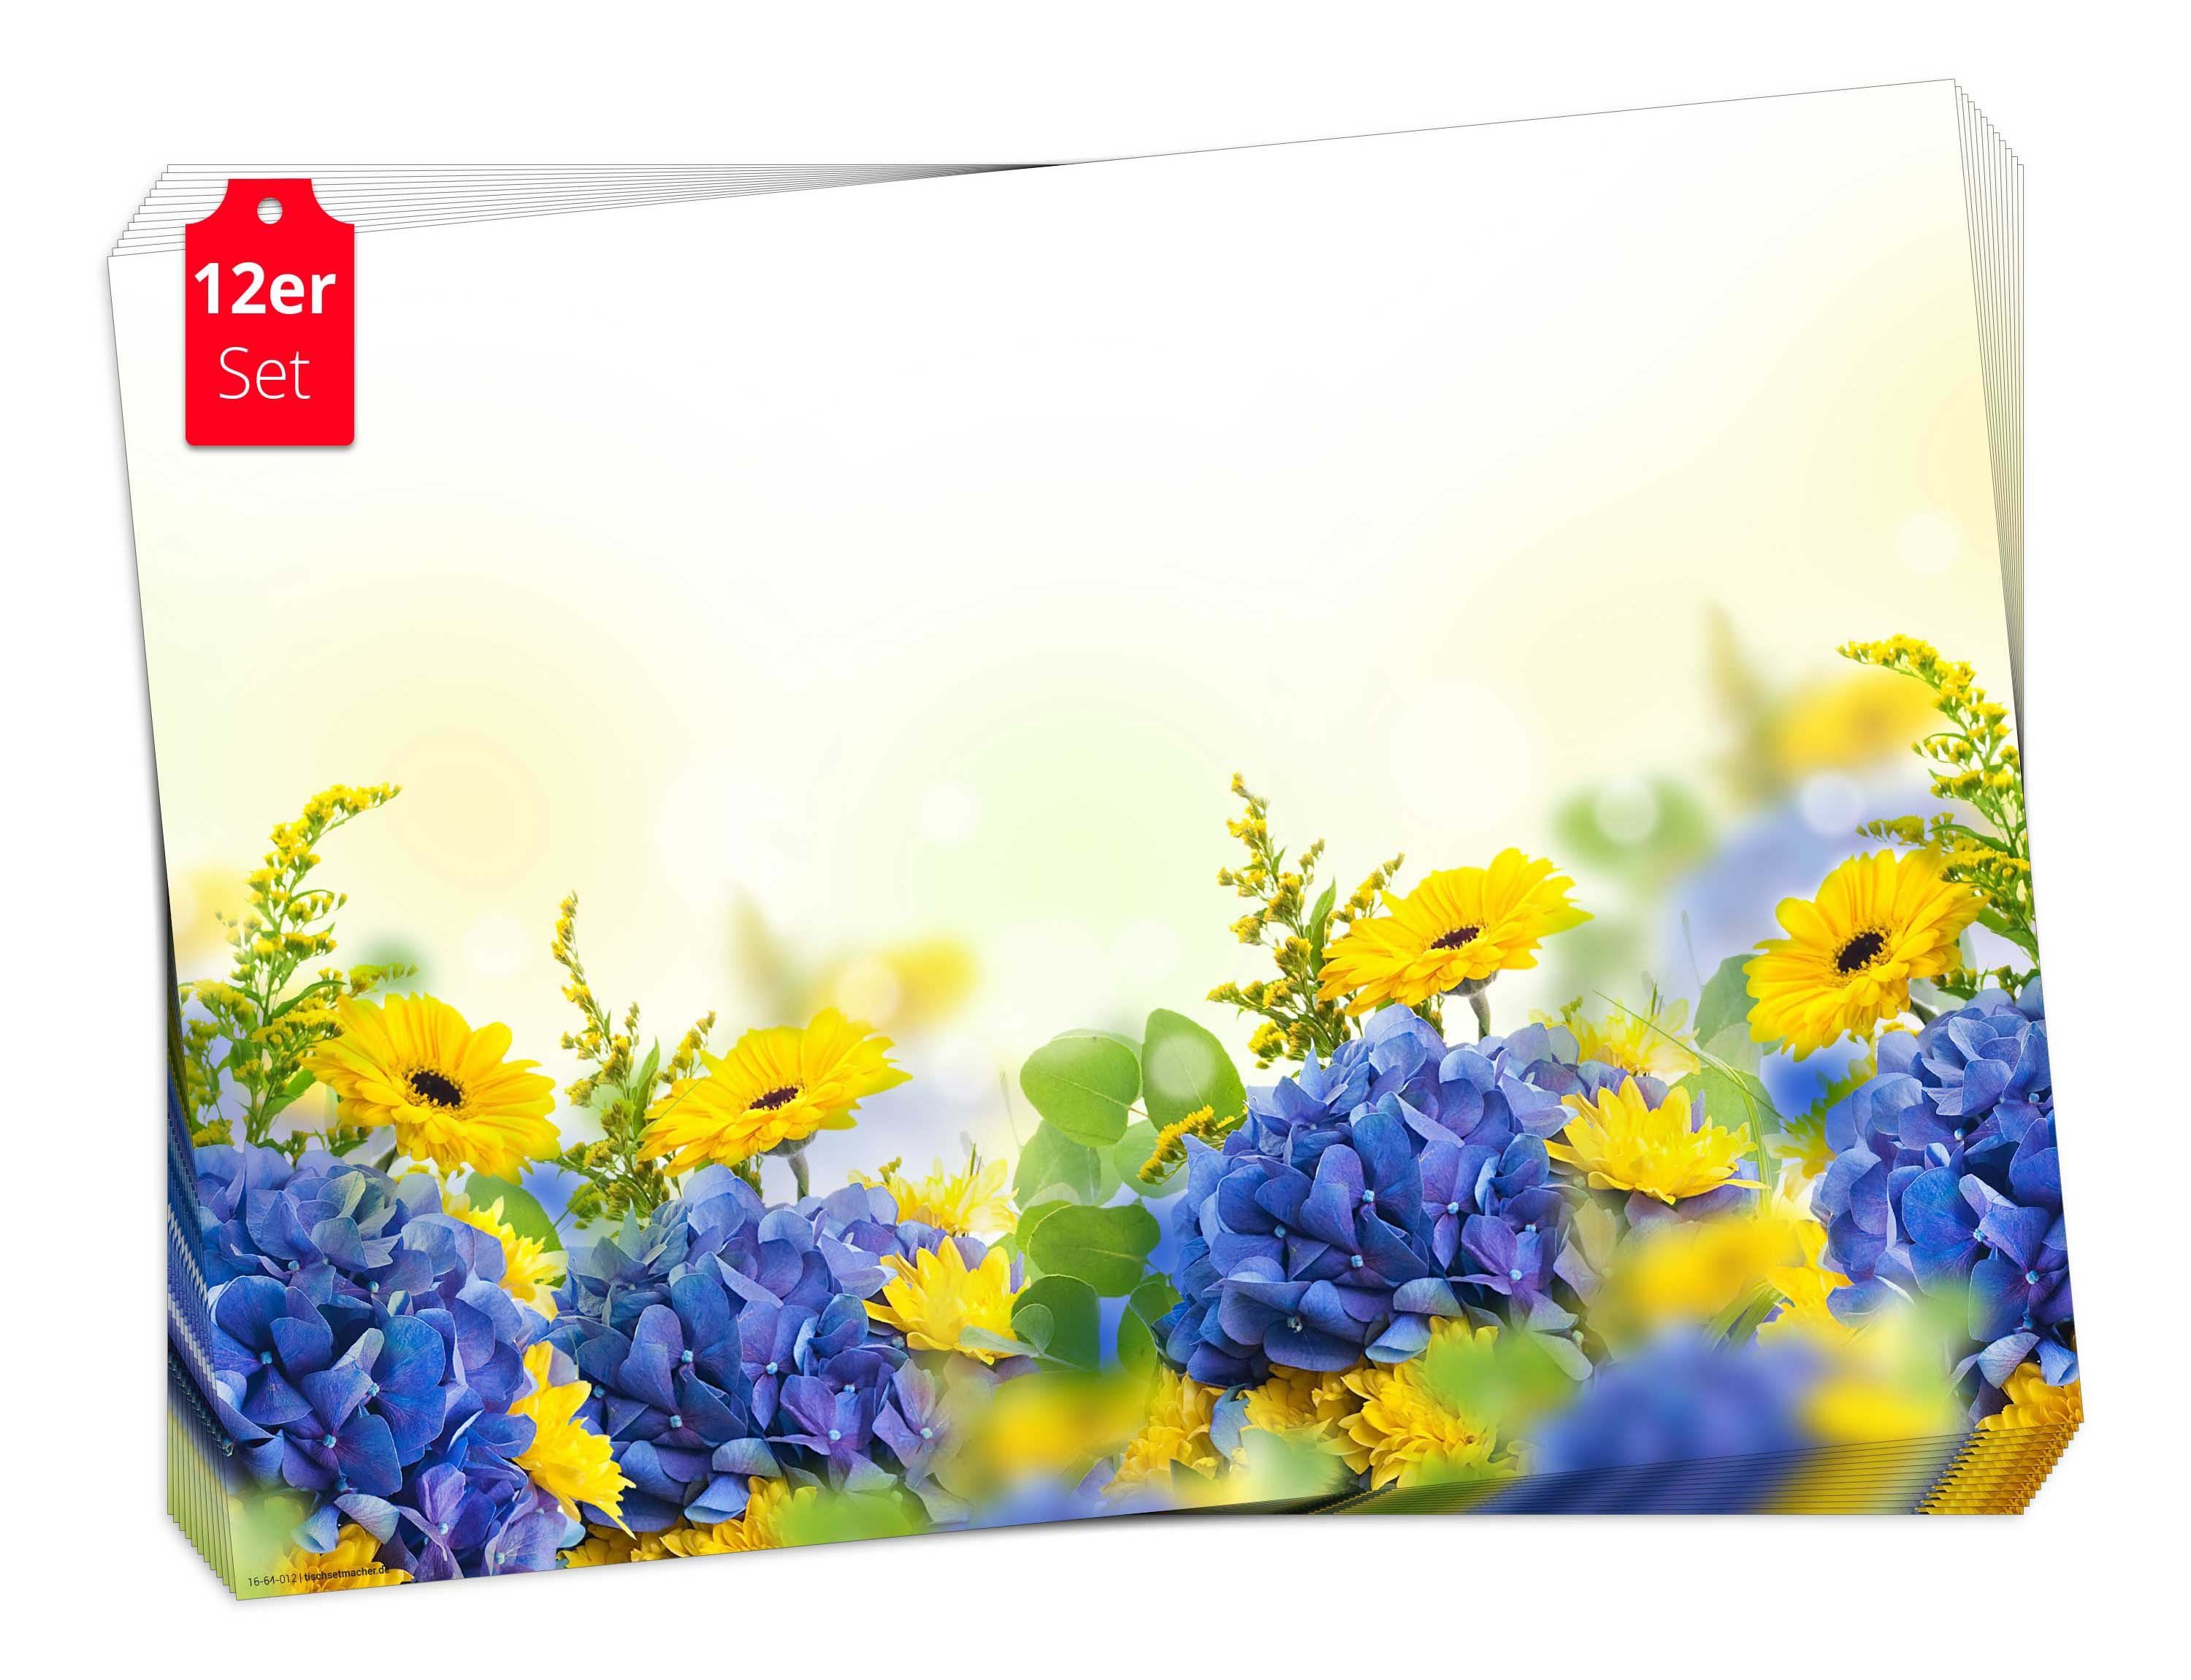 Hortensien in Tischset / Germany und Gerberas, Aufbewahrungsmappe 12-St., Blumen - Tischsetmacher, 44 Ostern Tischdeko in für & (aus Feiern, Naturpapier Frühling, Platzset, cm x 32 Made blau-gelb),